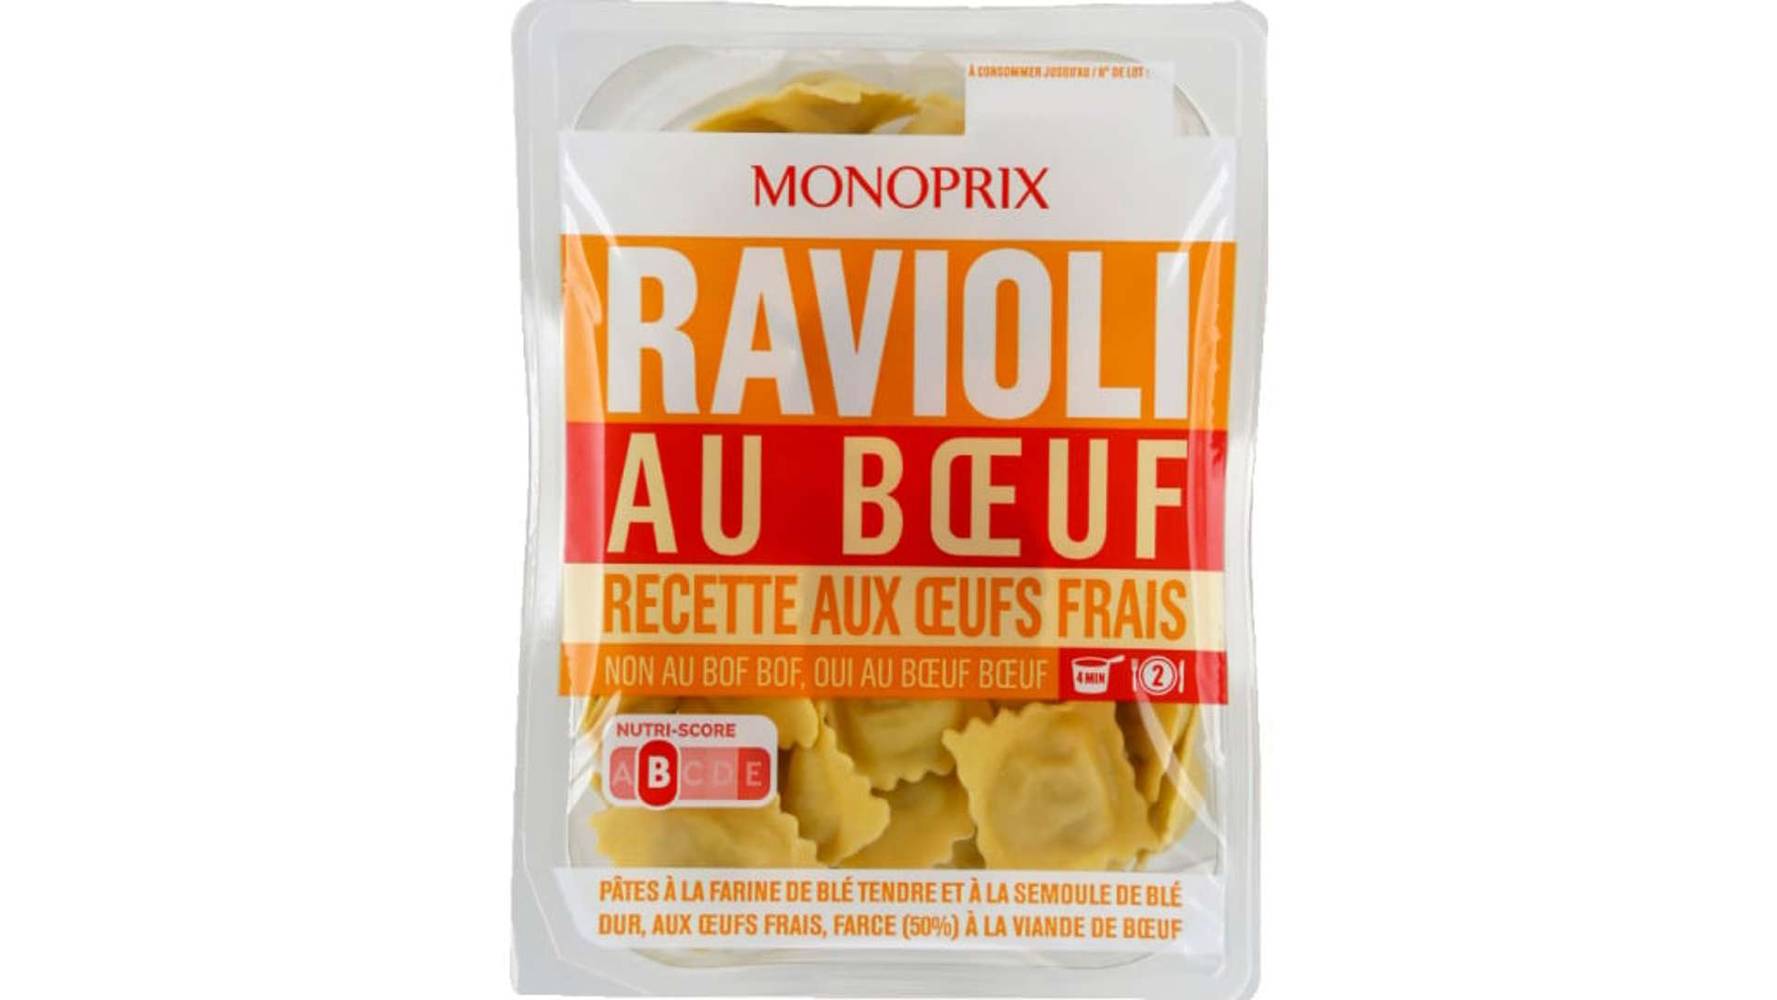 Monoprix Ravioli pur boeuf La barquette de 300 g